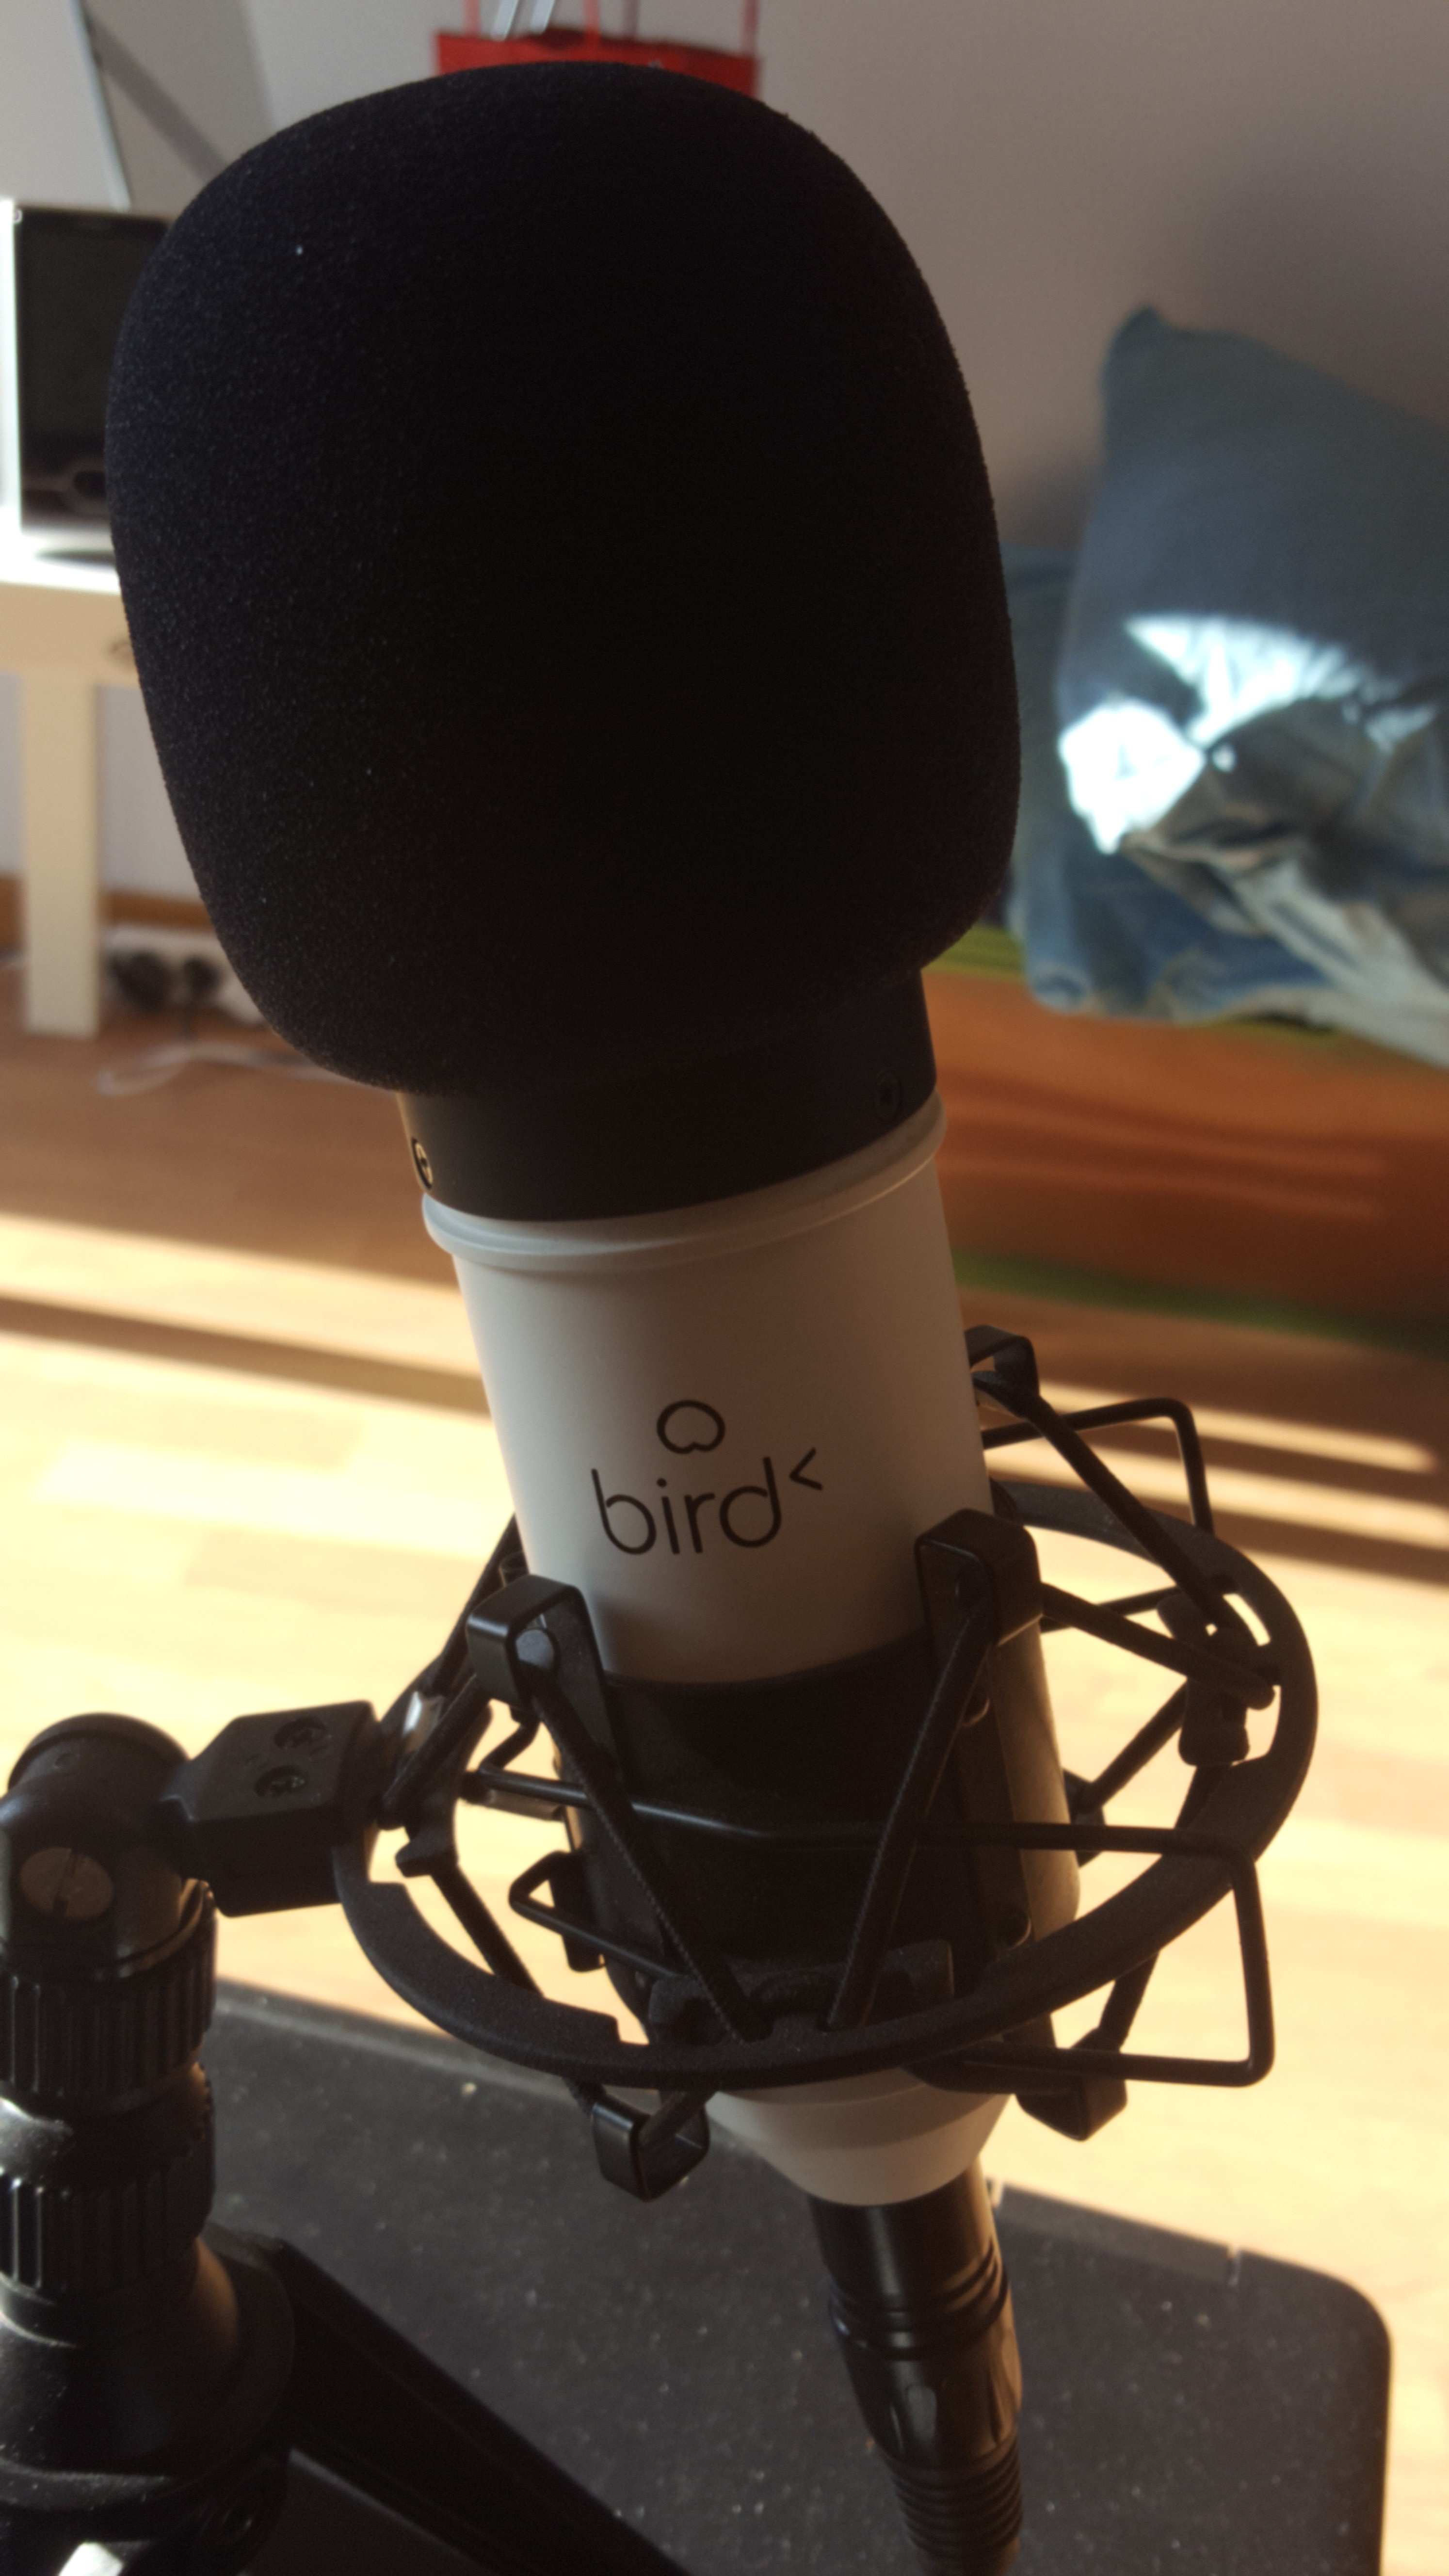 Bird UM1 - Blanc - Microphone Bird sur